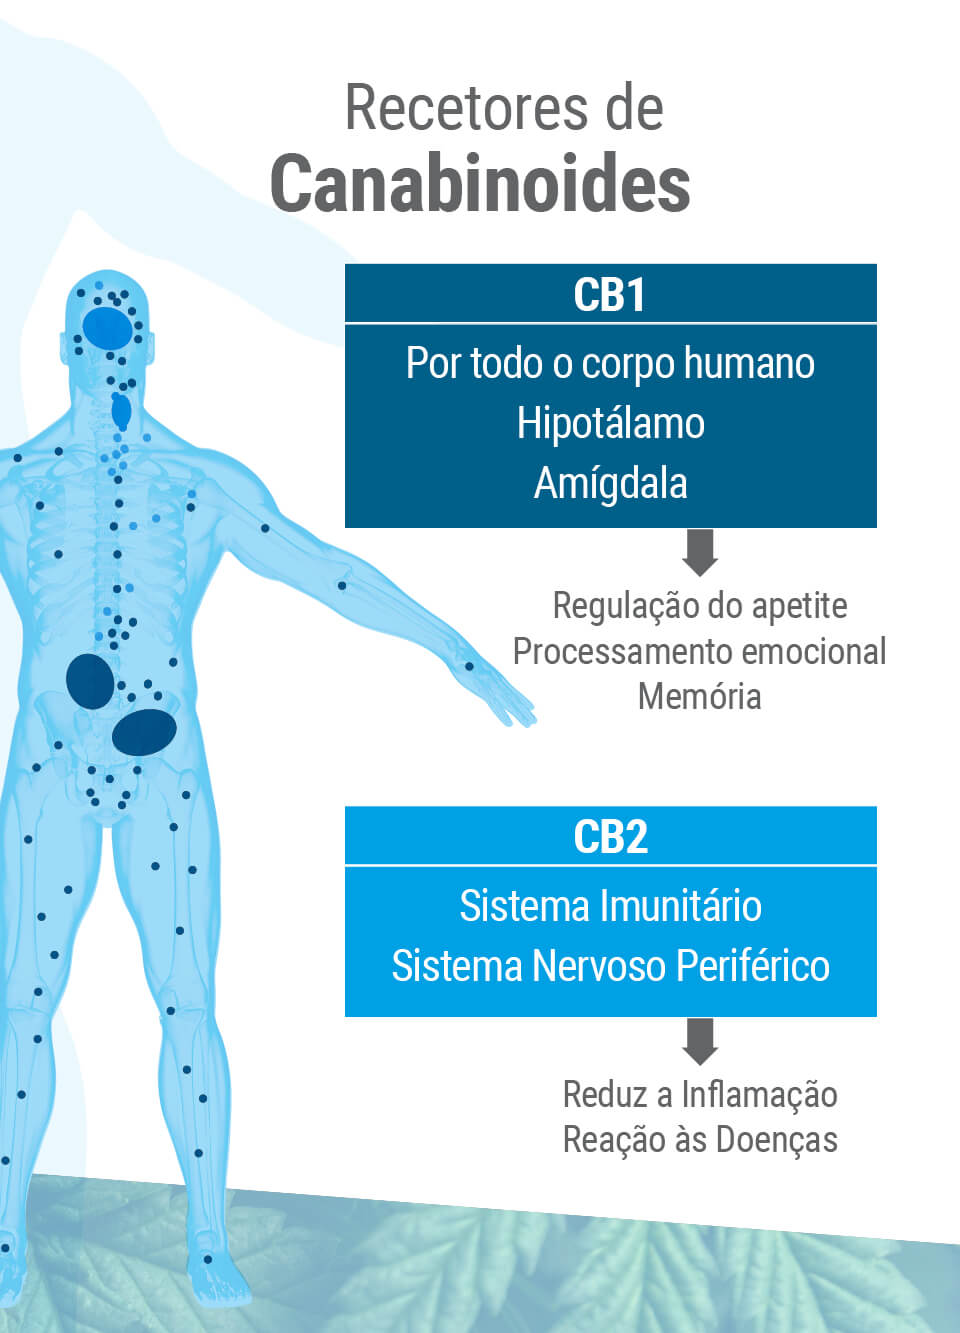 O sistema endocanabinoide apresenta dois tipos principais de recetores: CB1 e CB2